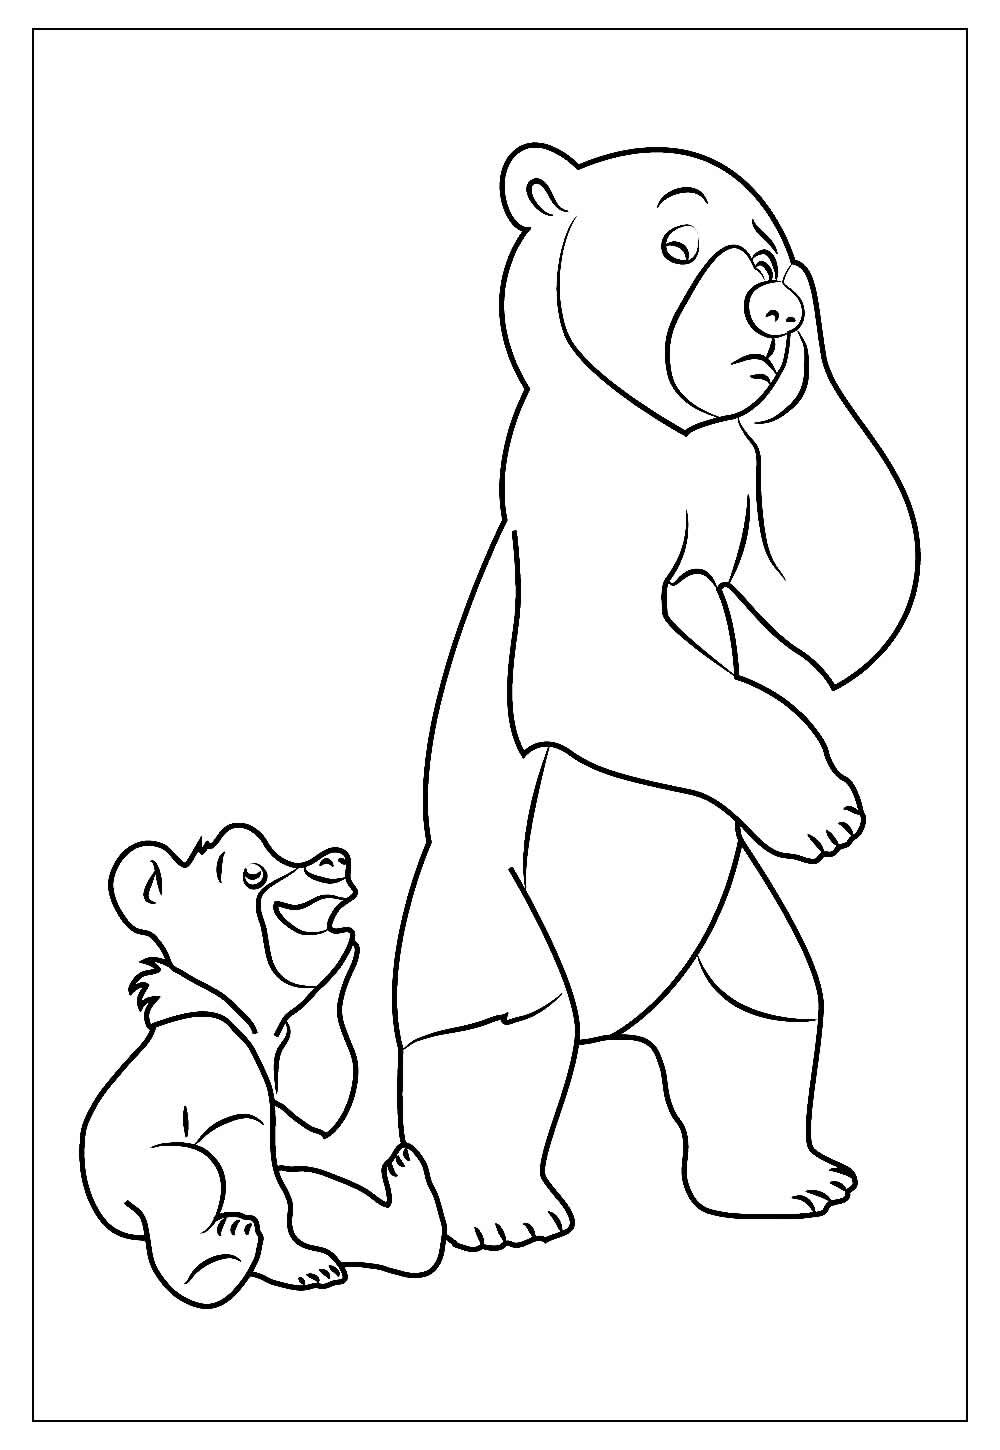 Imprimir desenho de ursos